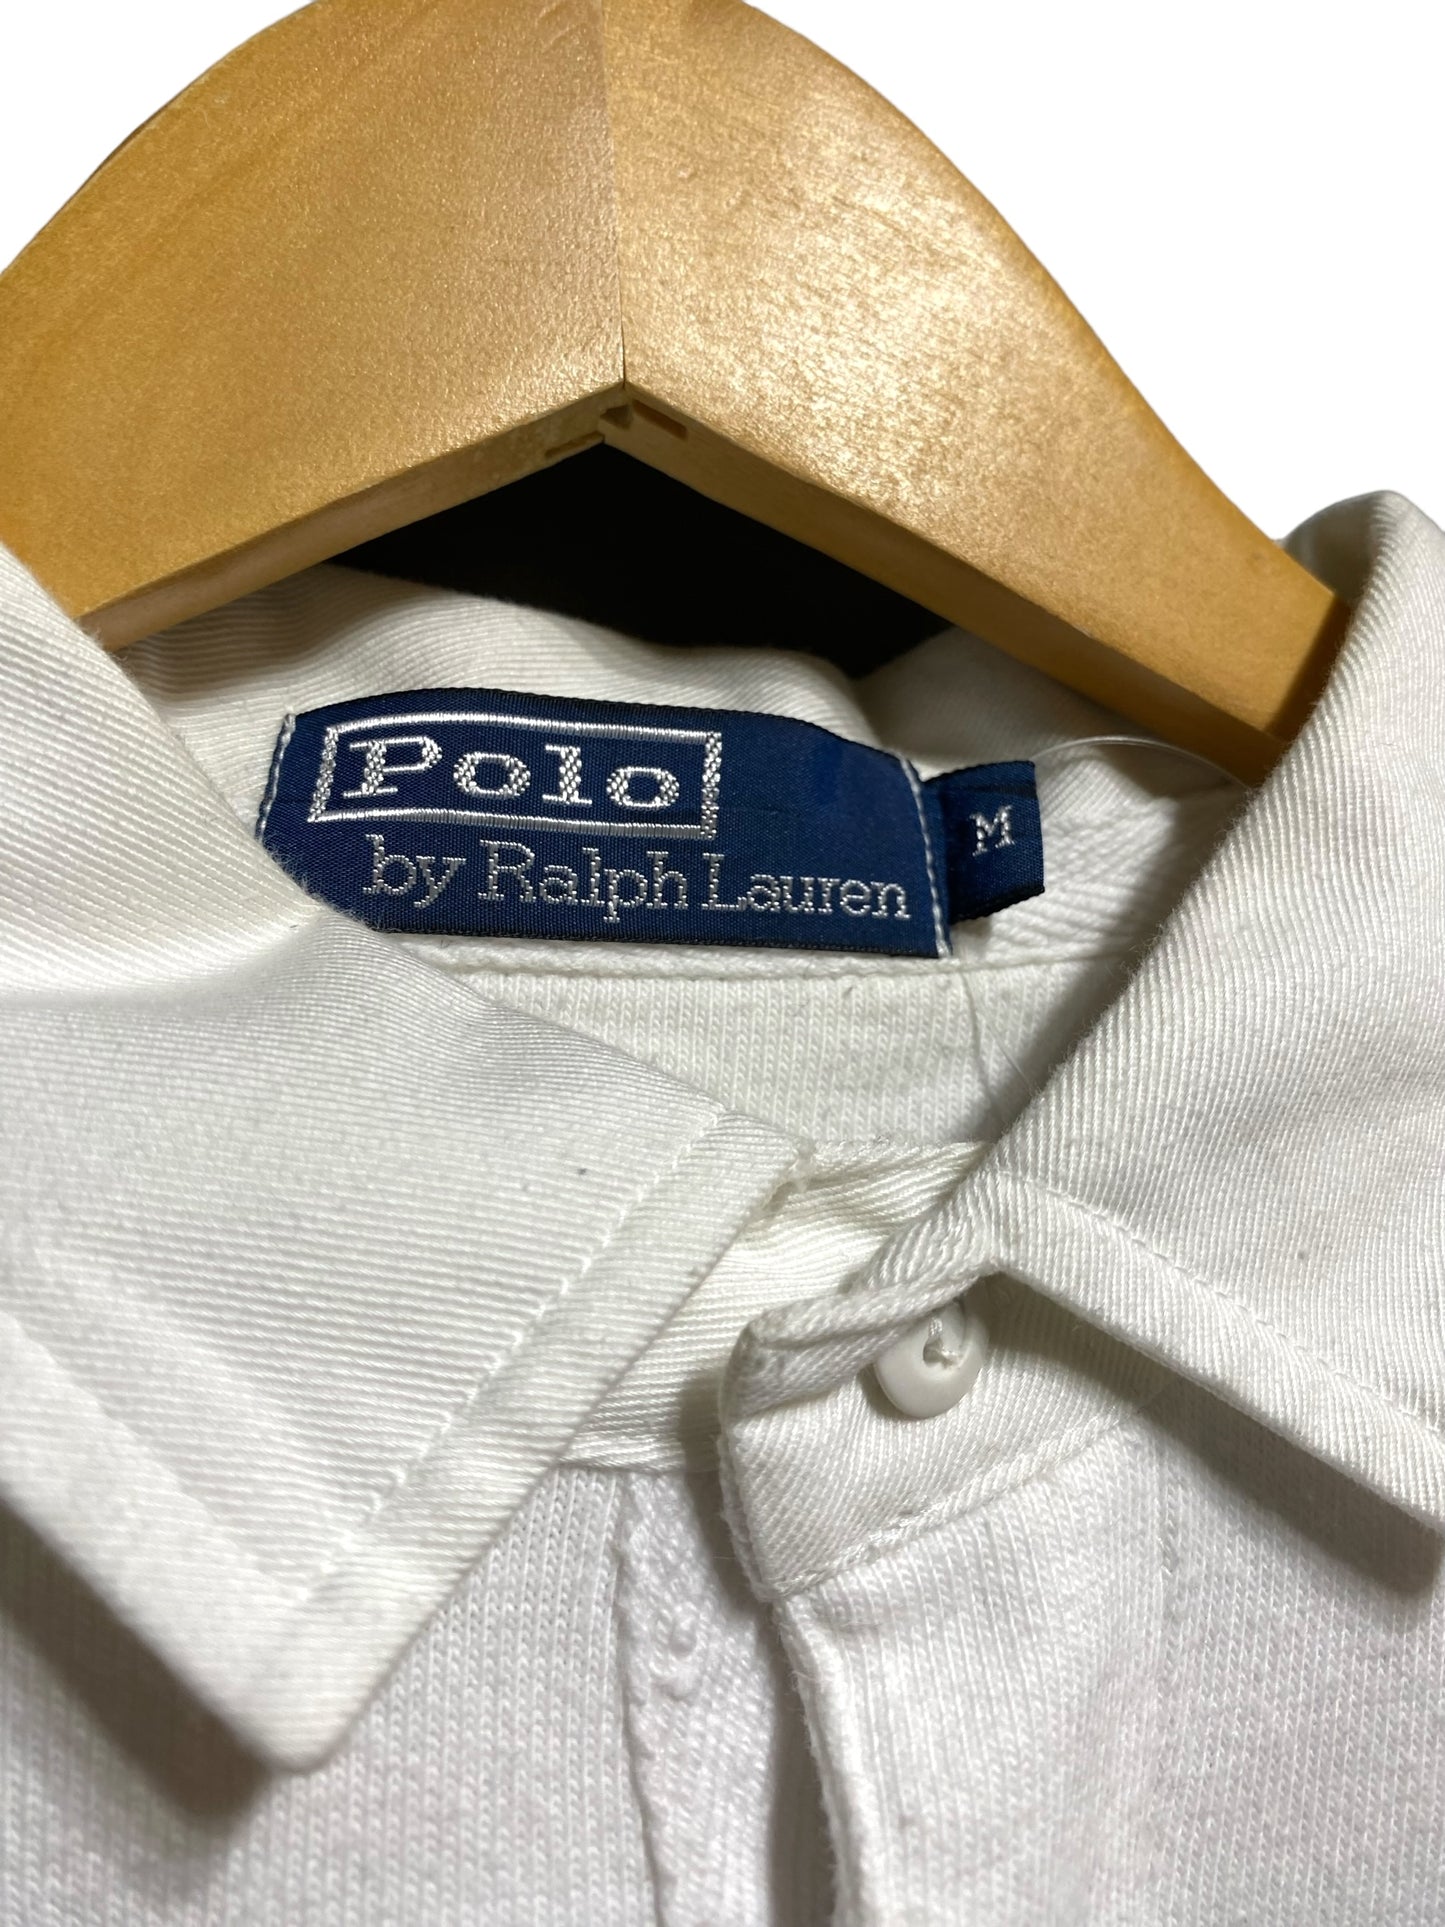 Ralph Lauren Polo ラルフローレン ポロ Rugby Shirt ラガーシャツ ラグビーシャツ